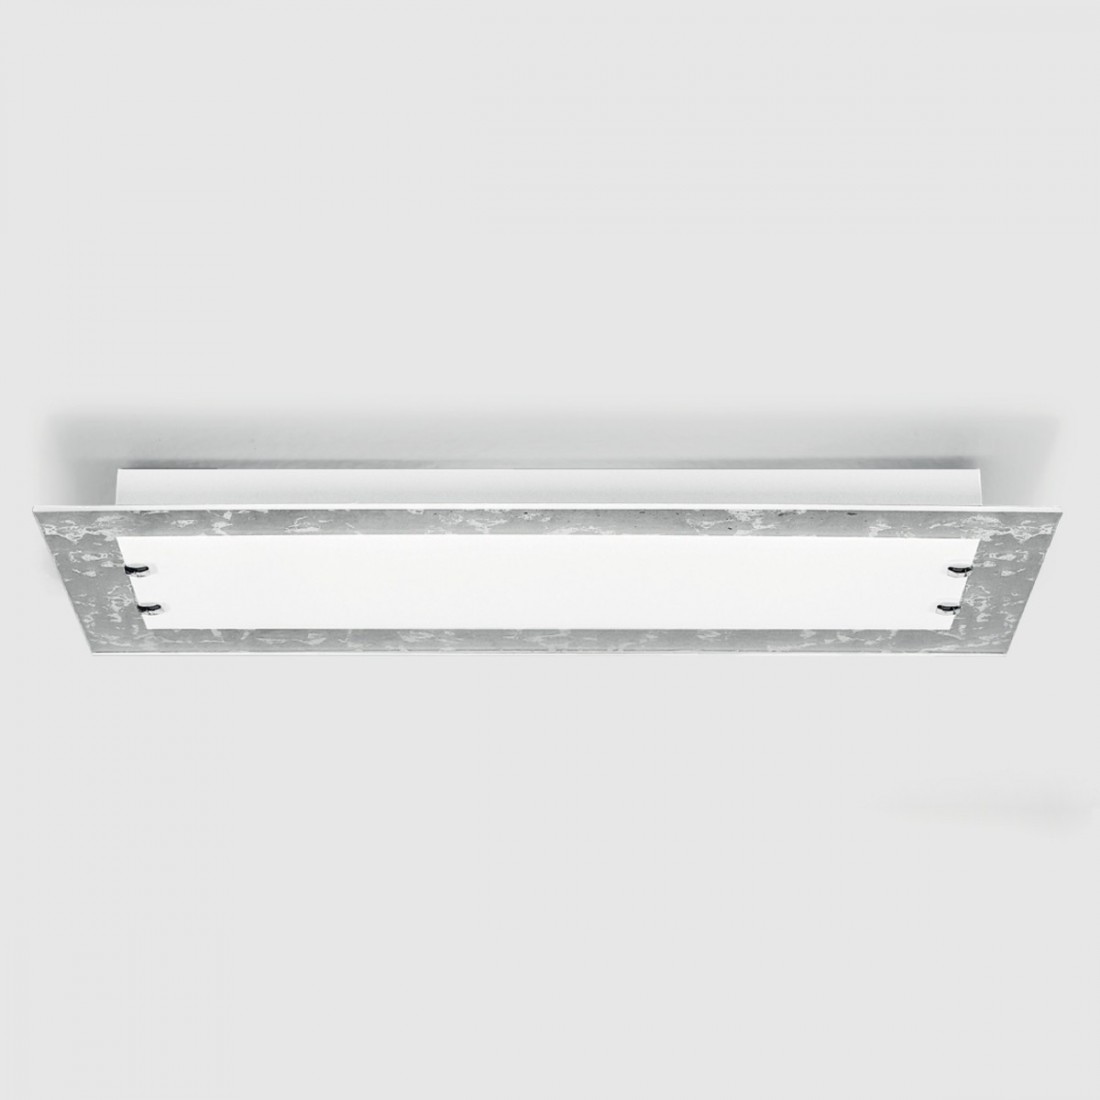 Applique SV-BASIC STYLE E27 LED rettangolare vetro lampada parete soffitto decorato foglia interno